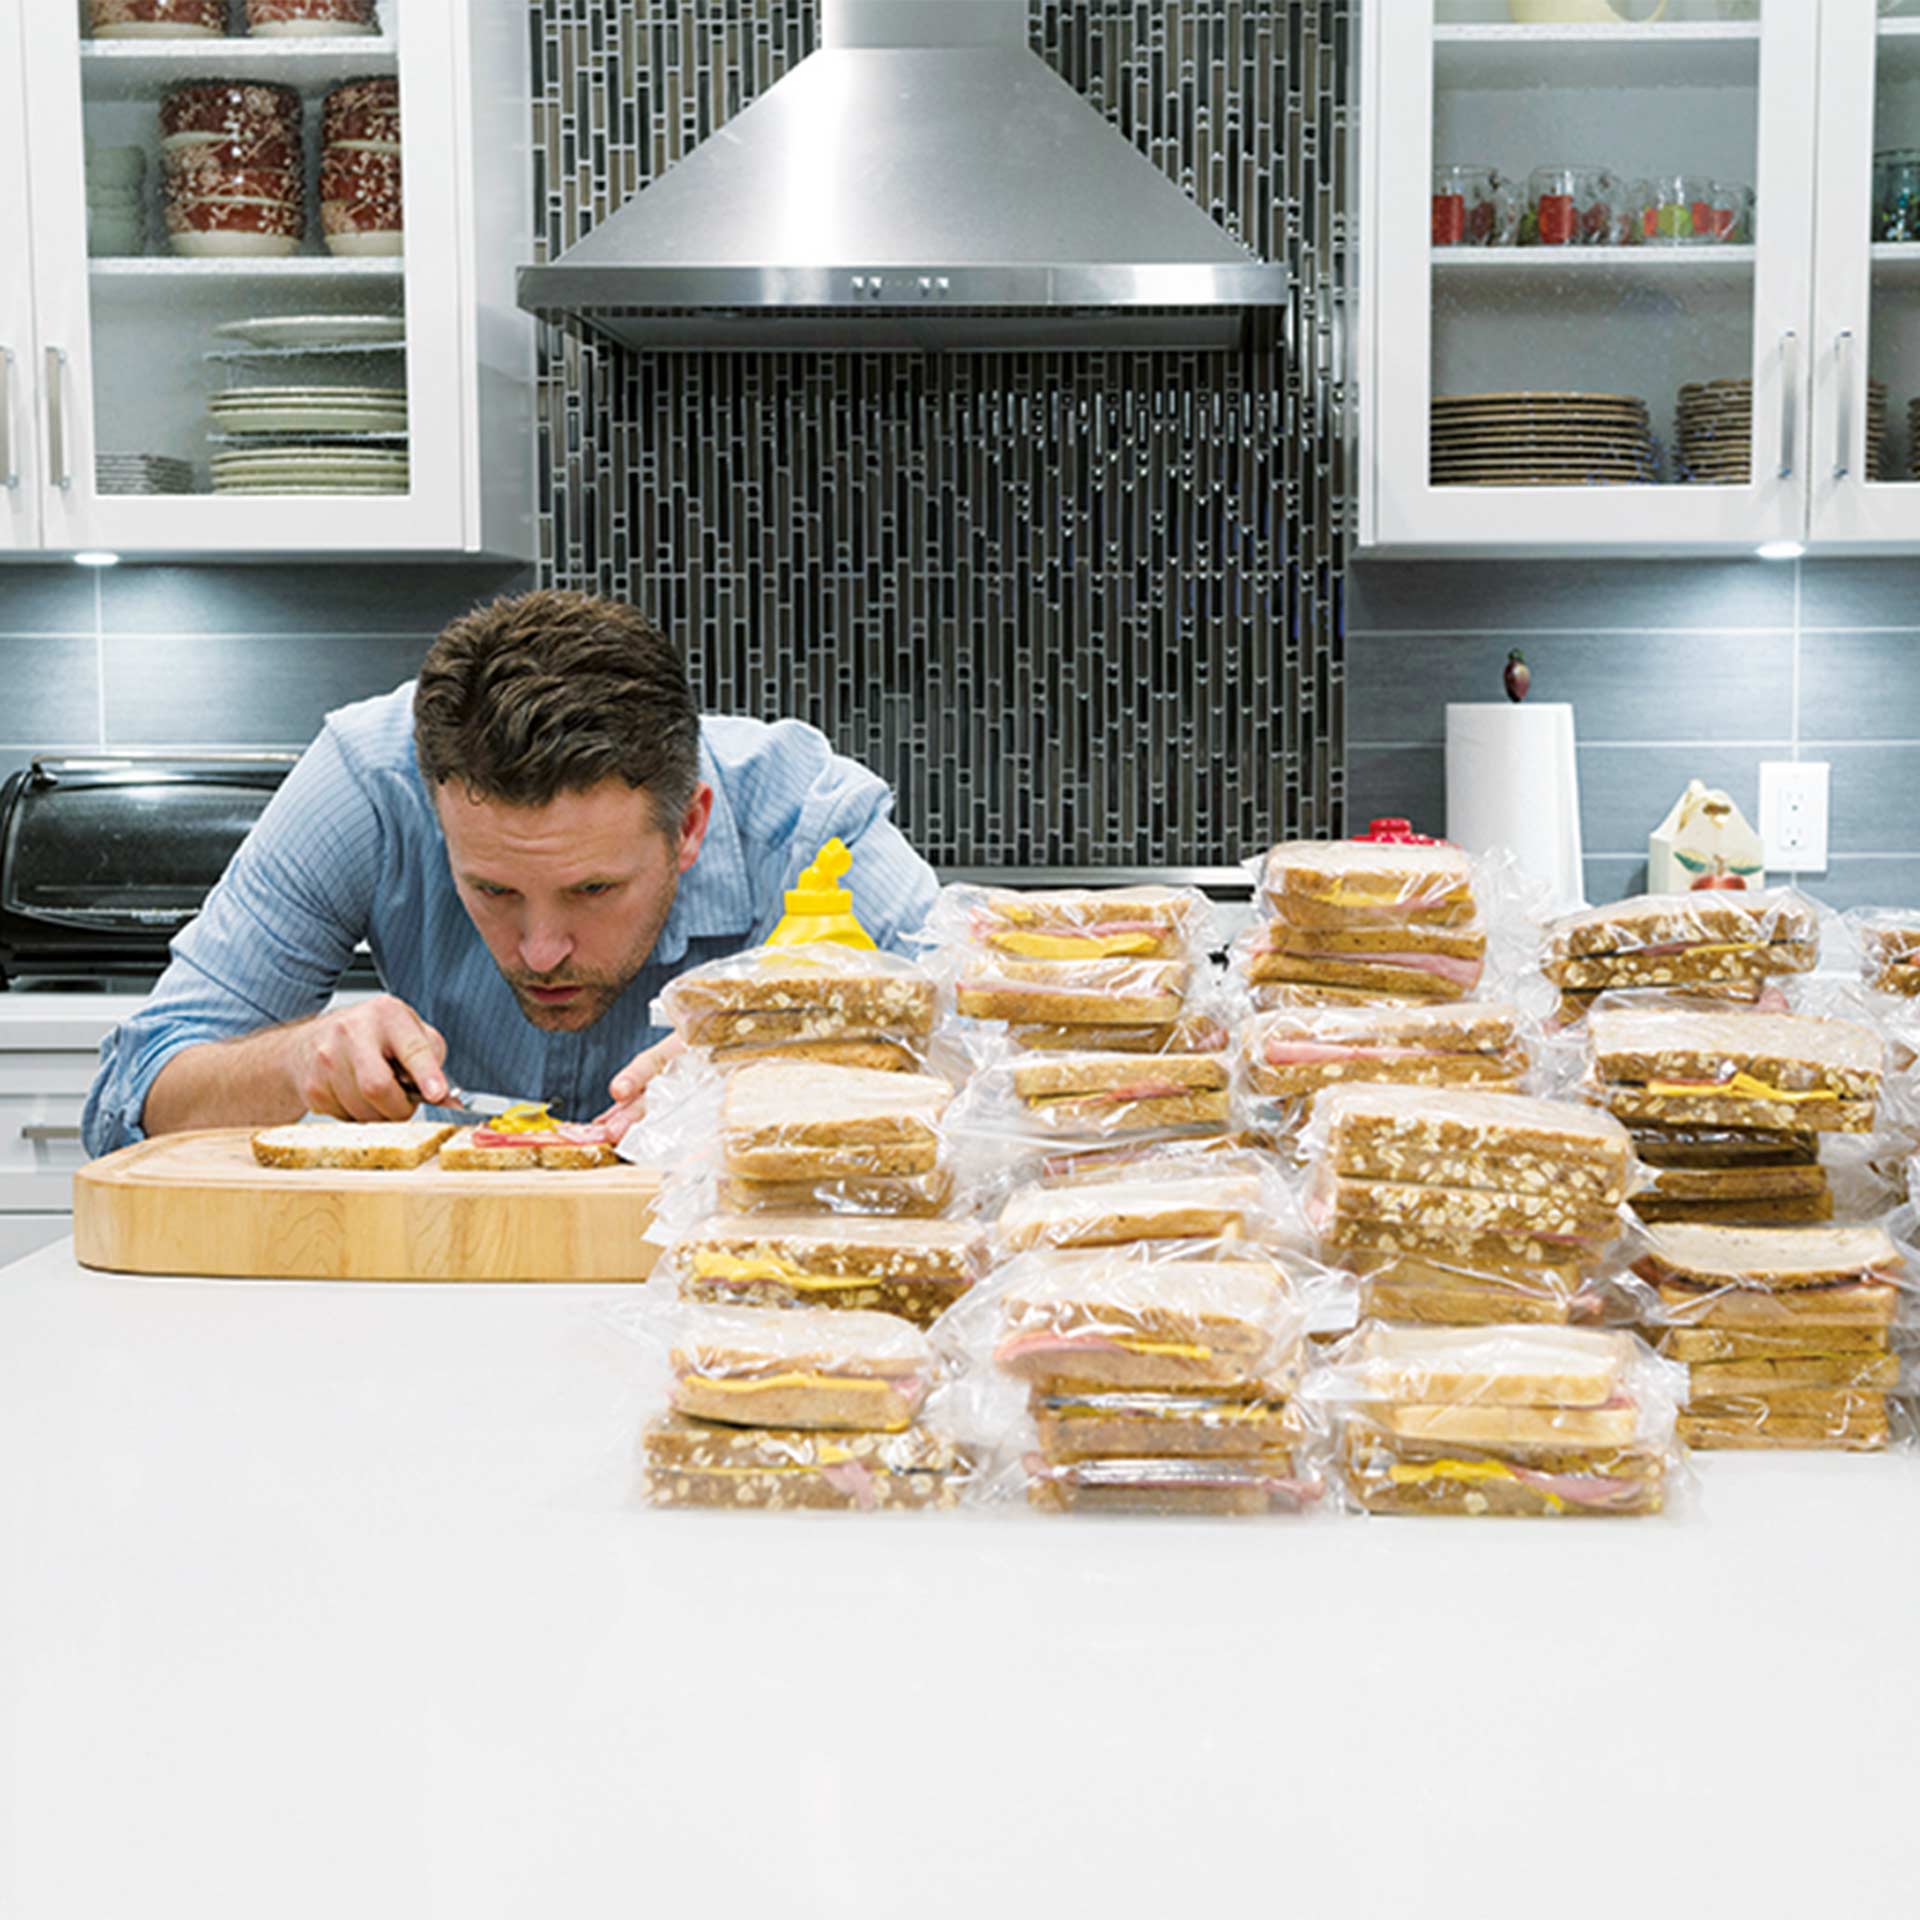 Ein junger Mann bereitet mehrer Sandwiches vor